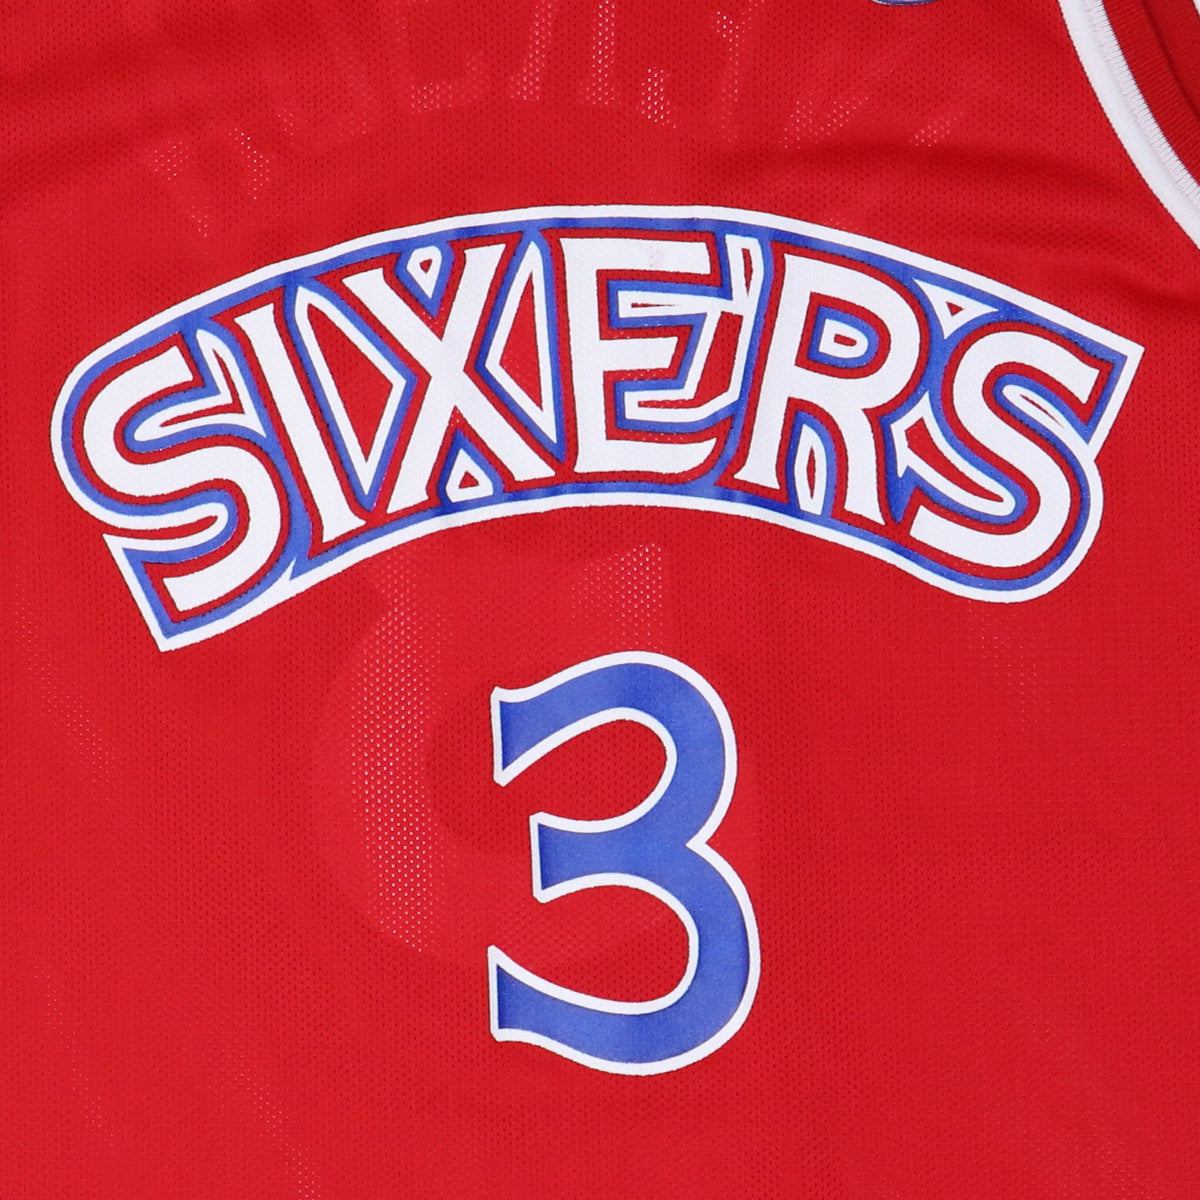 Allen Iverson NBA Fan Jerseys for sale